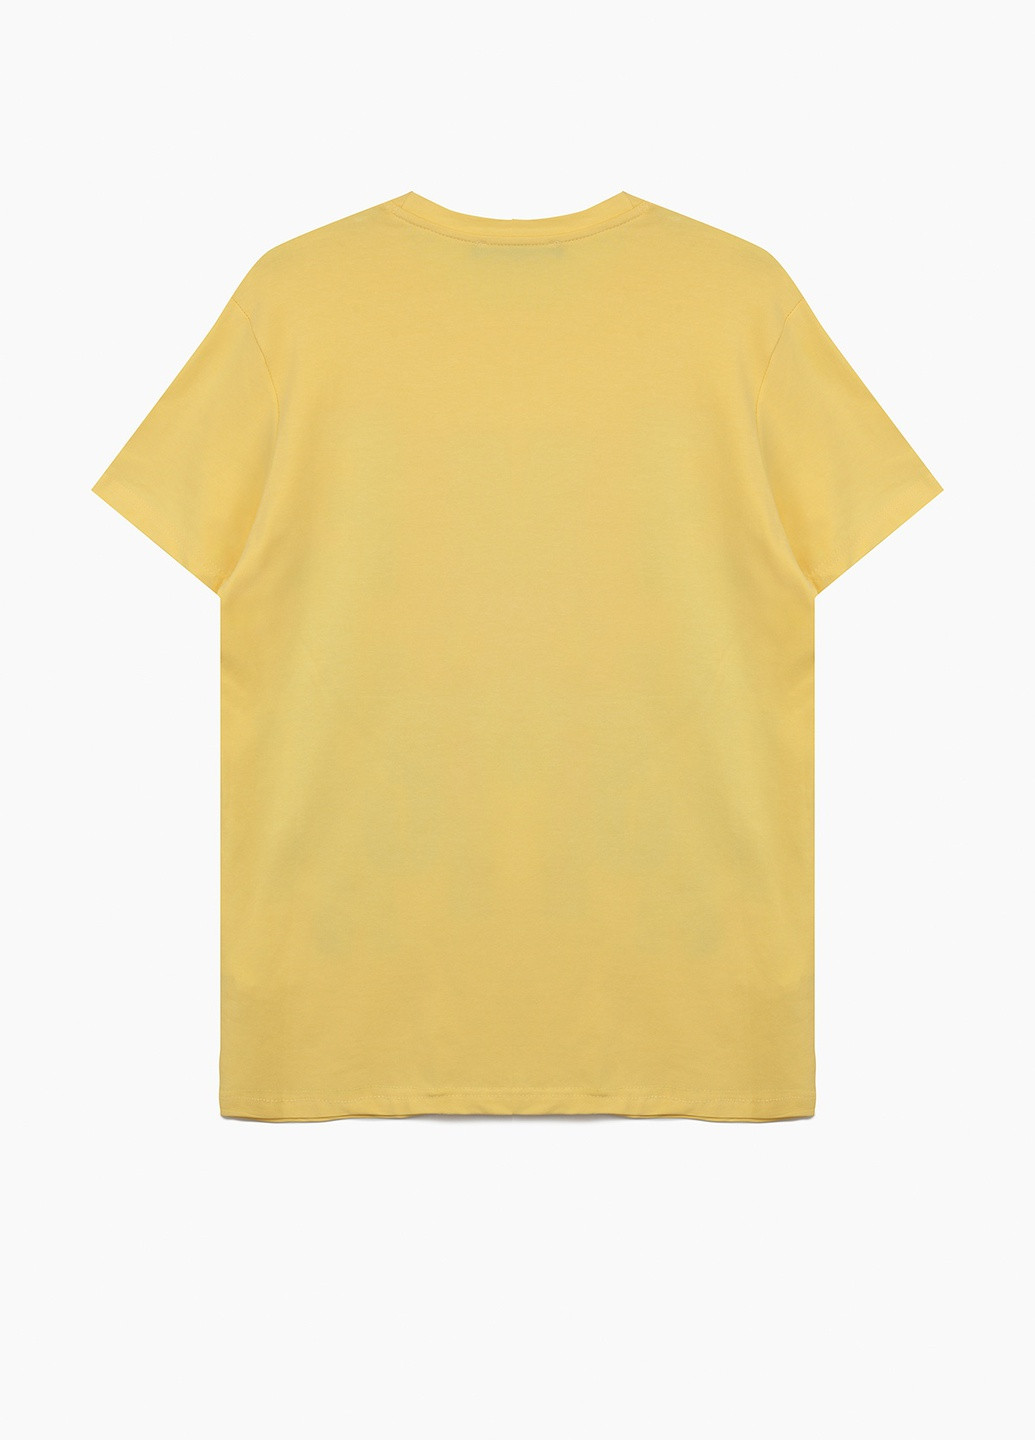 Желтая футболка Hope